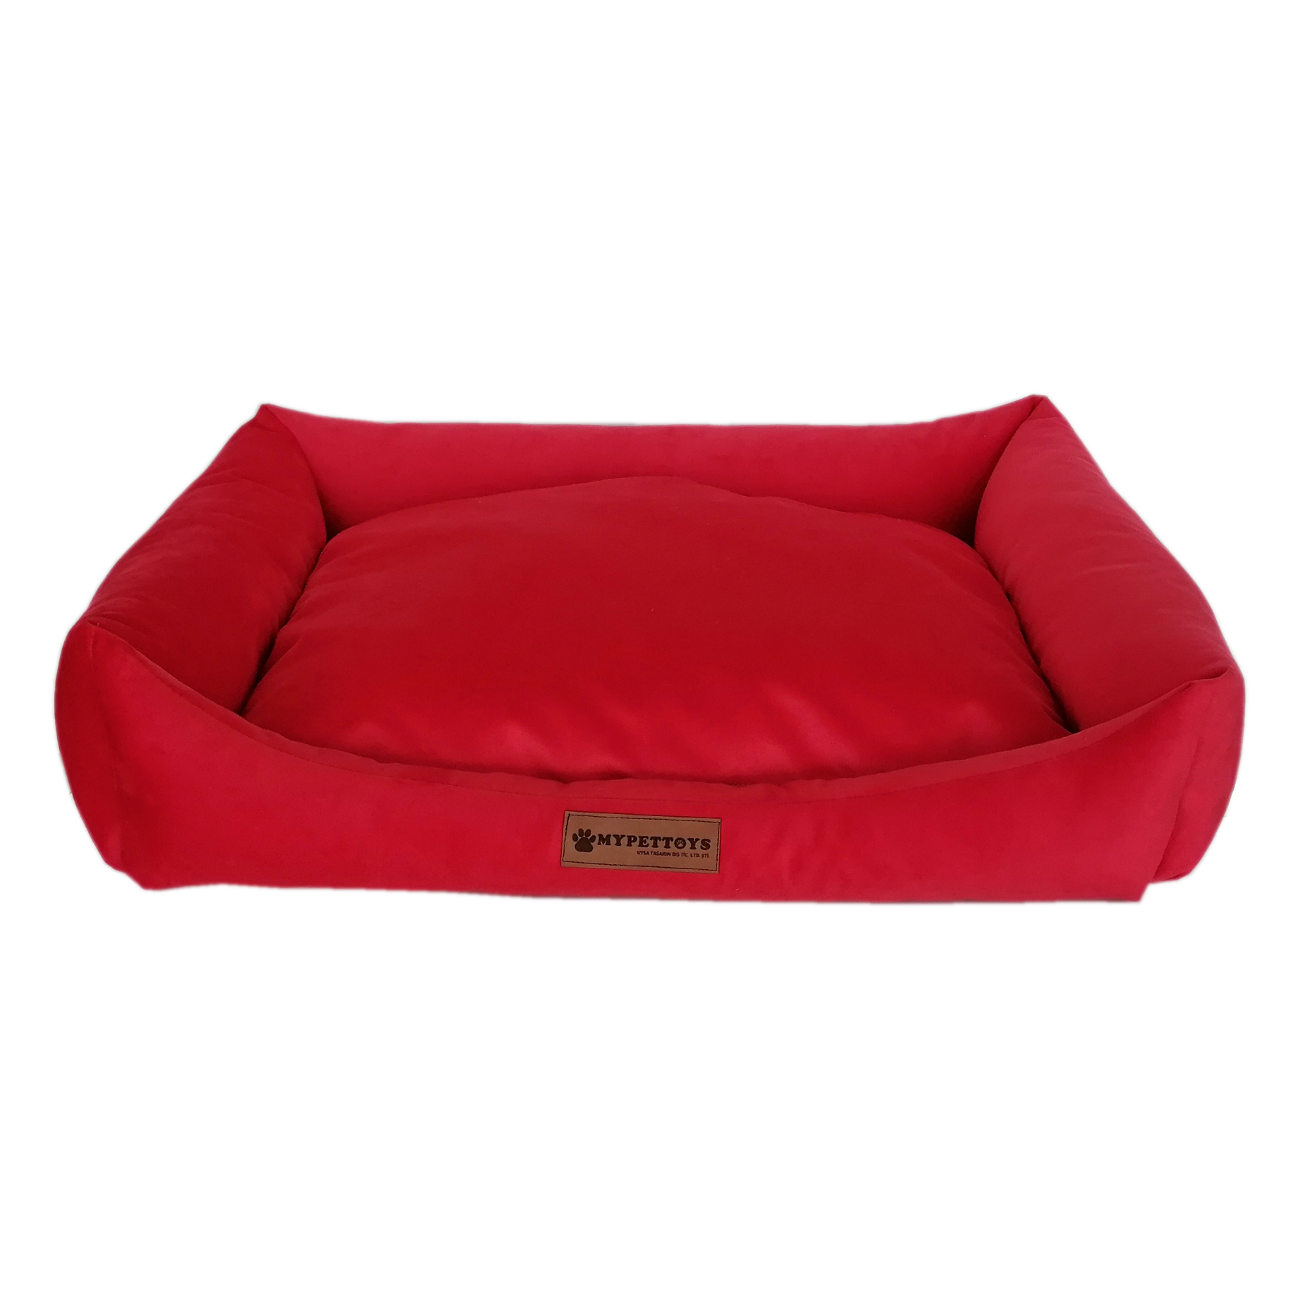 Tay Tüyü Yumuşak Köpek Yatağı X Large Kırmızı 80*100 cm